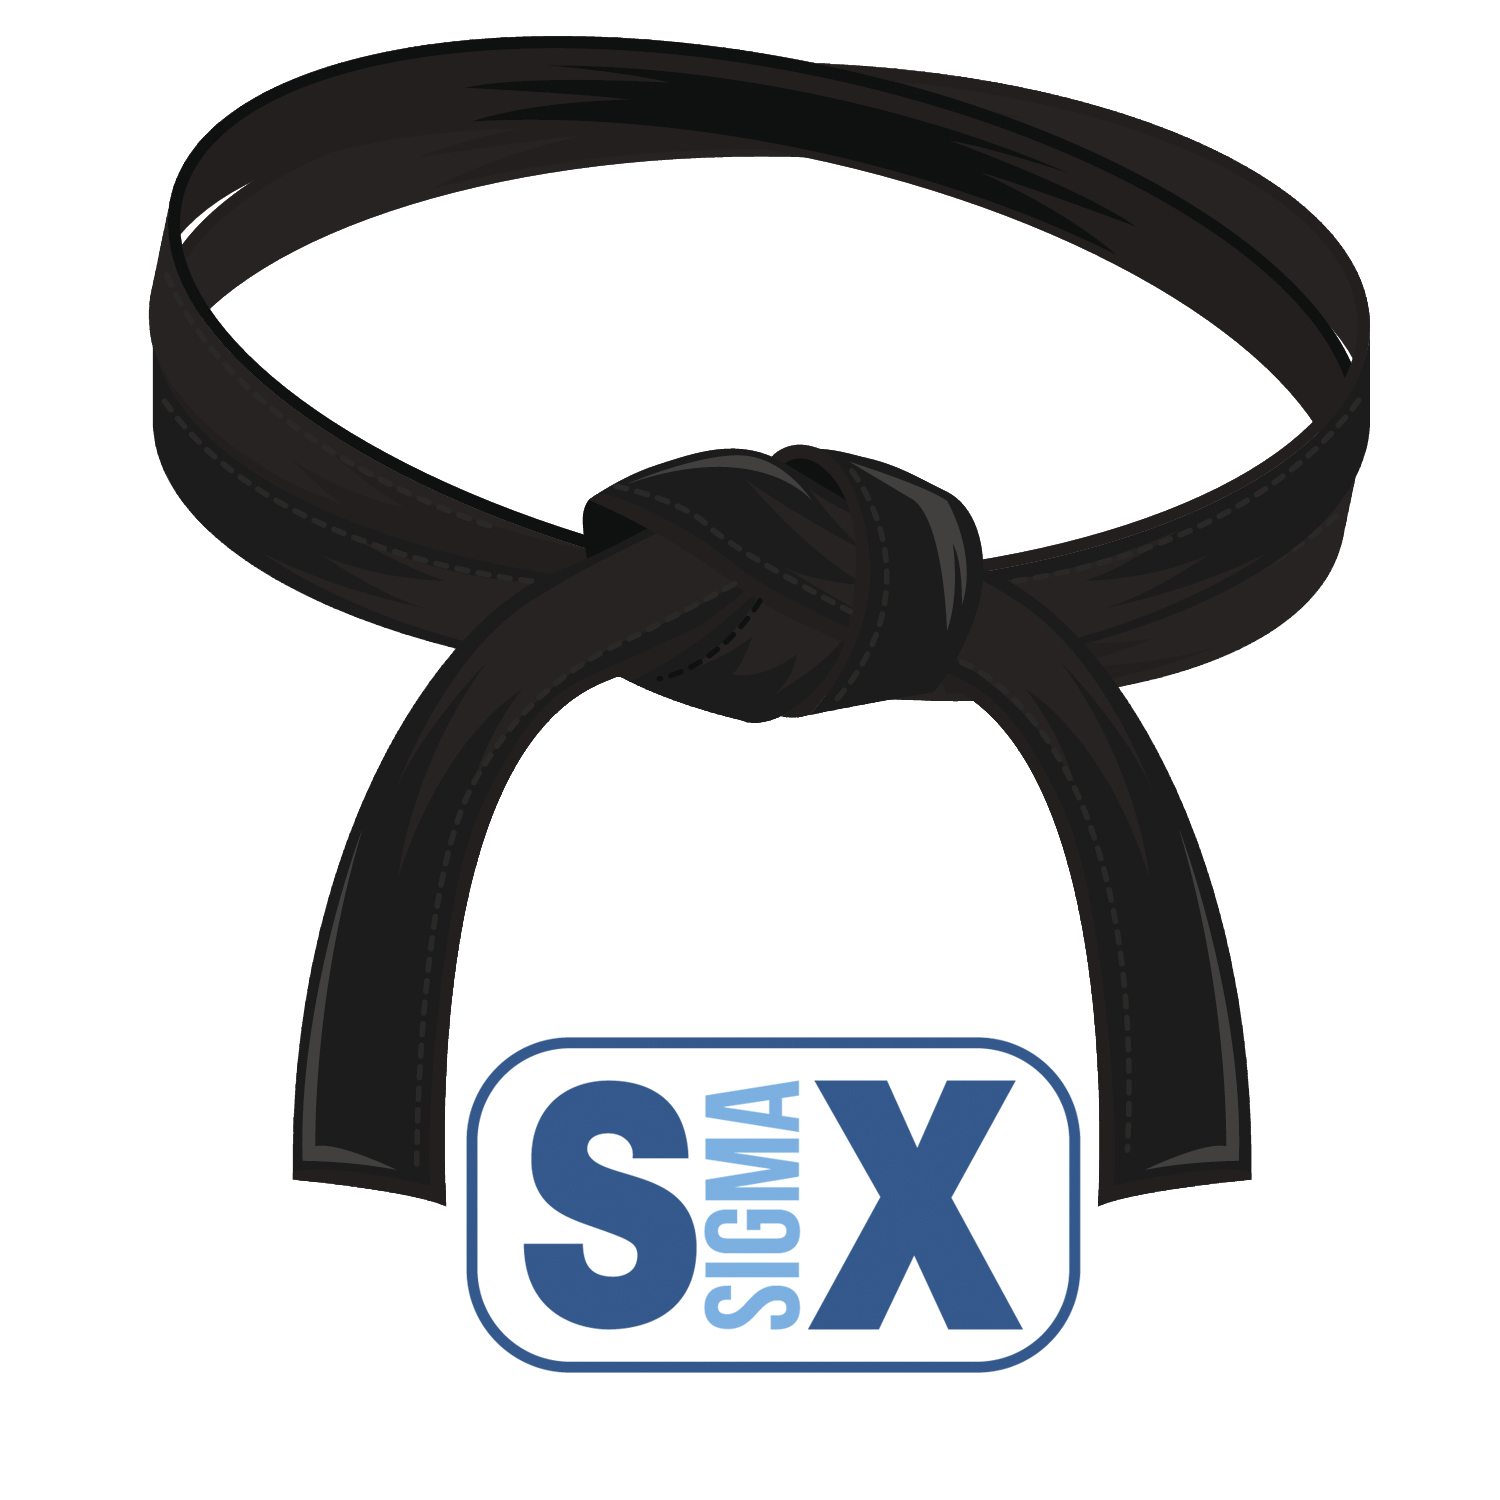 6 sigma black belt certification